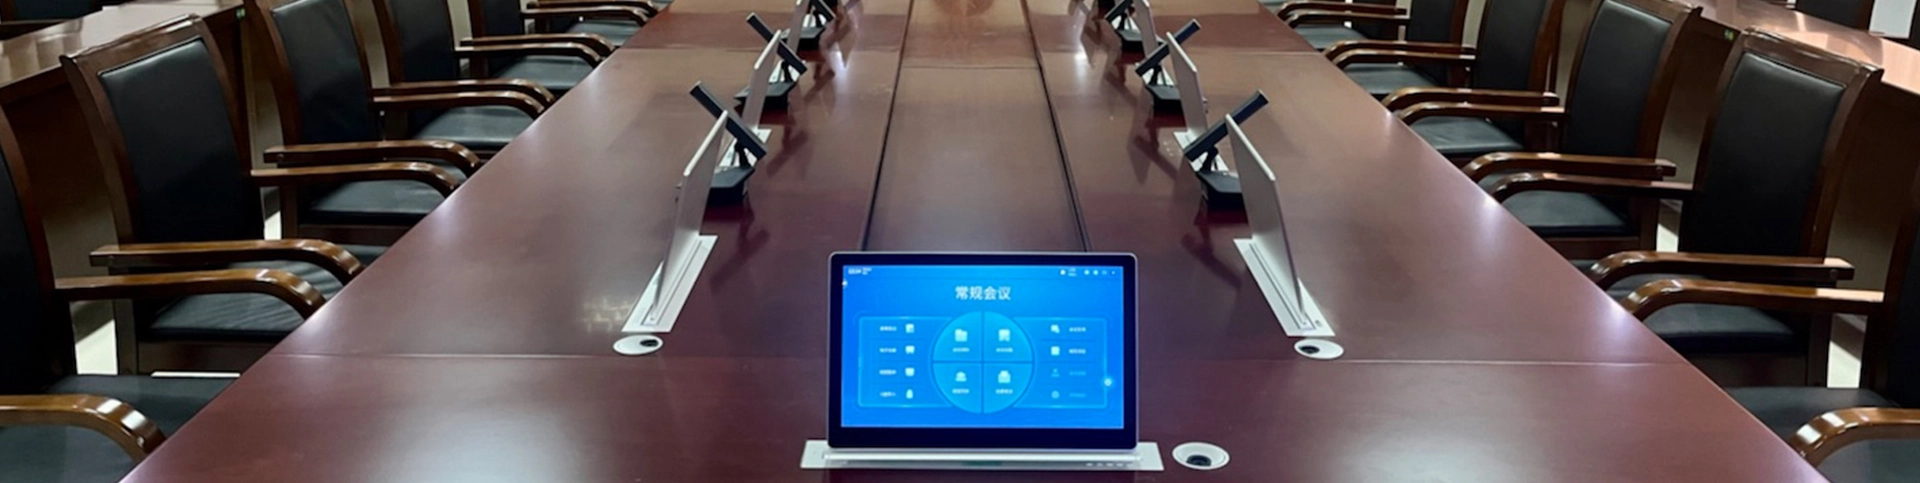 Безбумажная система конференции для проекта суда Чжаньцзяна